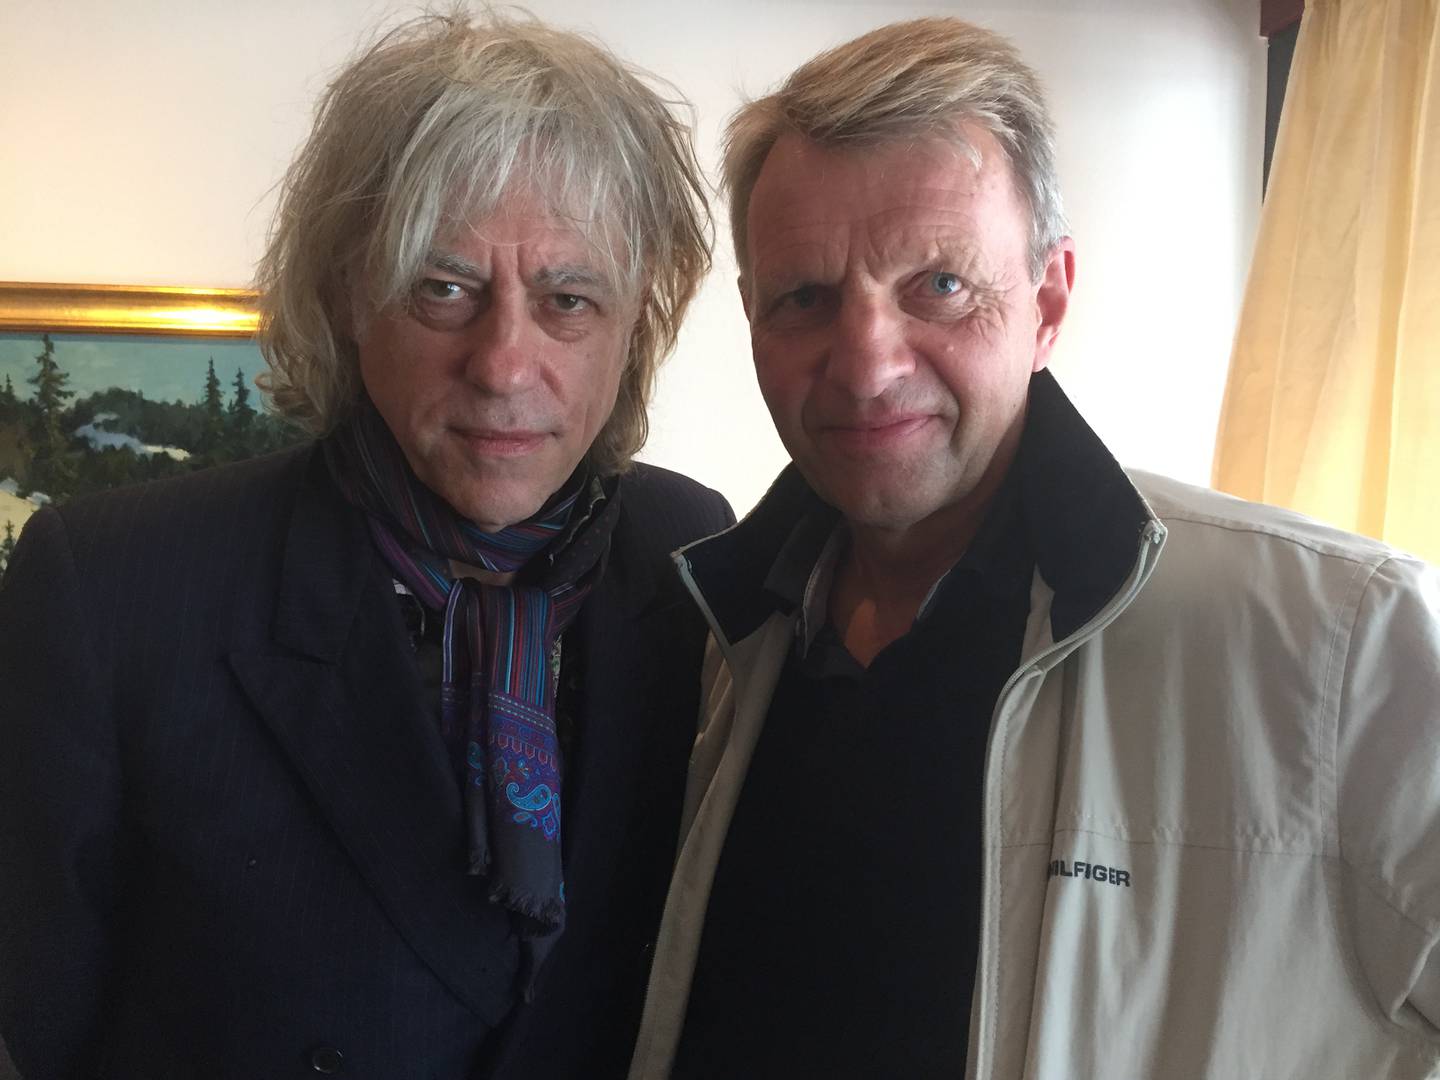 Det var ikke rockeartisten Bob Geldof i Boomtown Rats jeg traff på Hotell Norge i Kristiansand i 2015, det var frihetsforkjempere og faren.